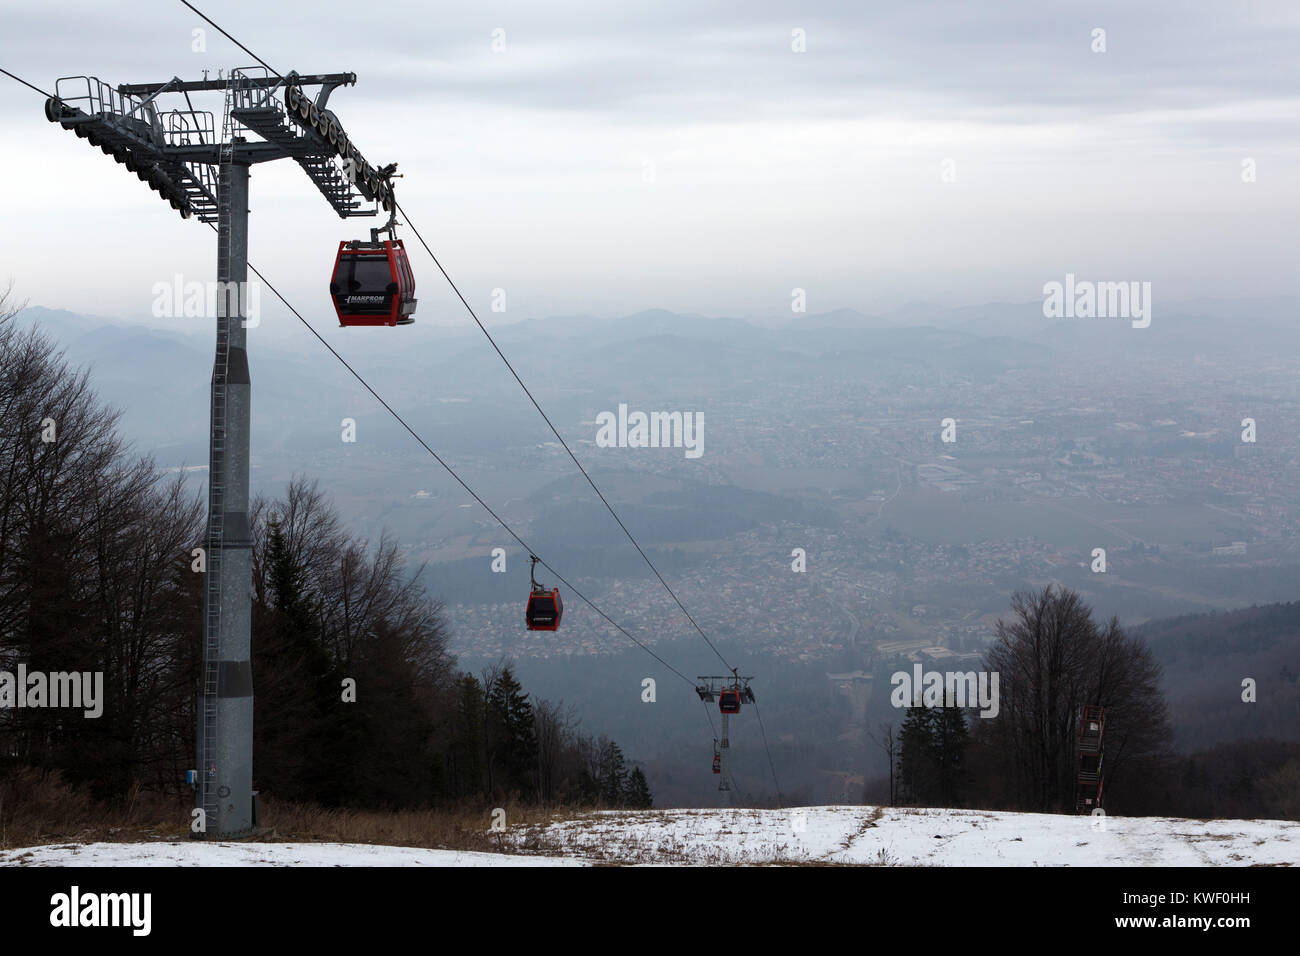 Eine Seilbahn in der Pohorje Berge in der Nähe von Maribor Slowenien. Das System transportiert